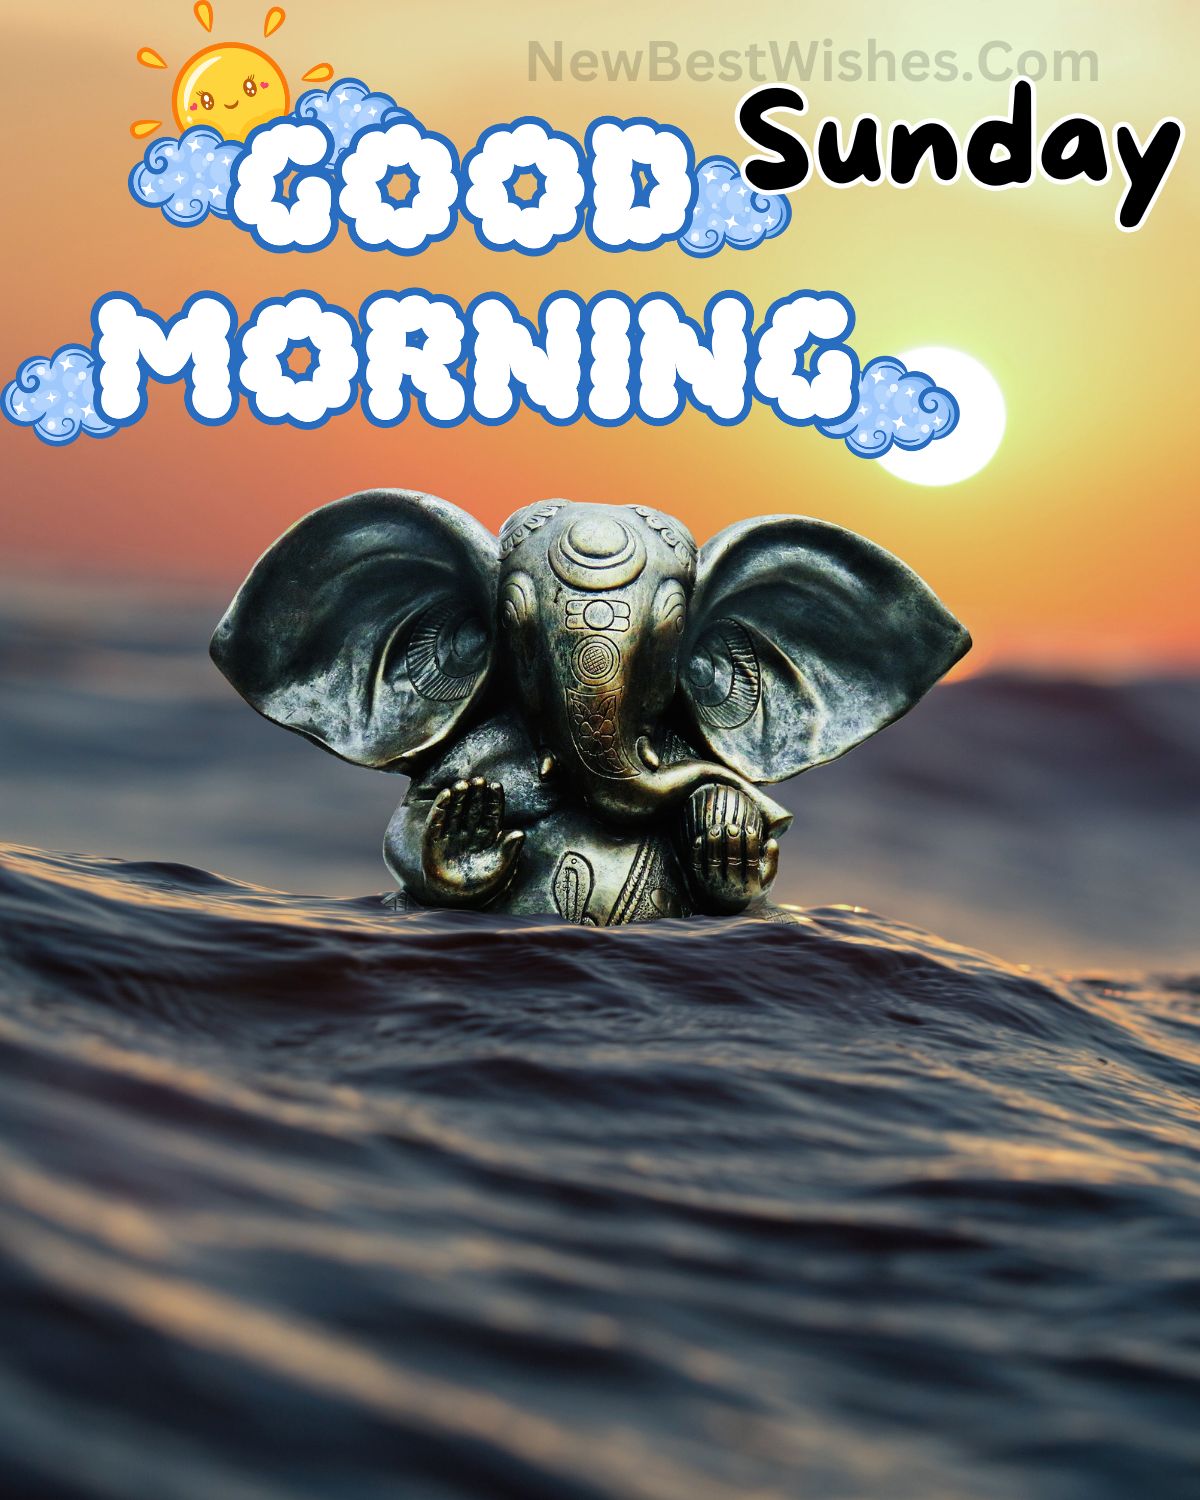 Sunday good morning wishes with god images 9